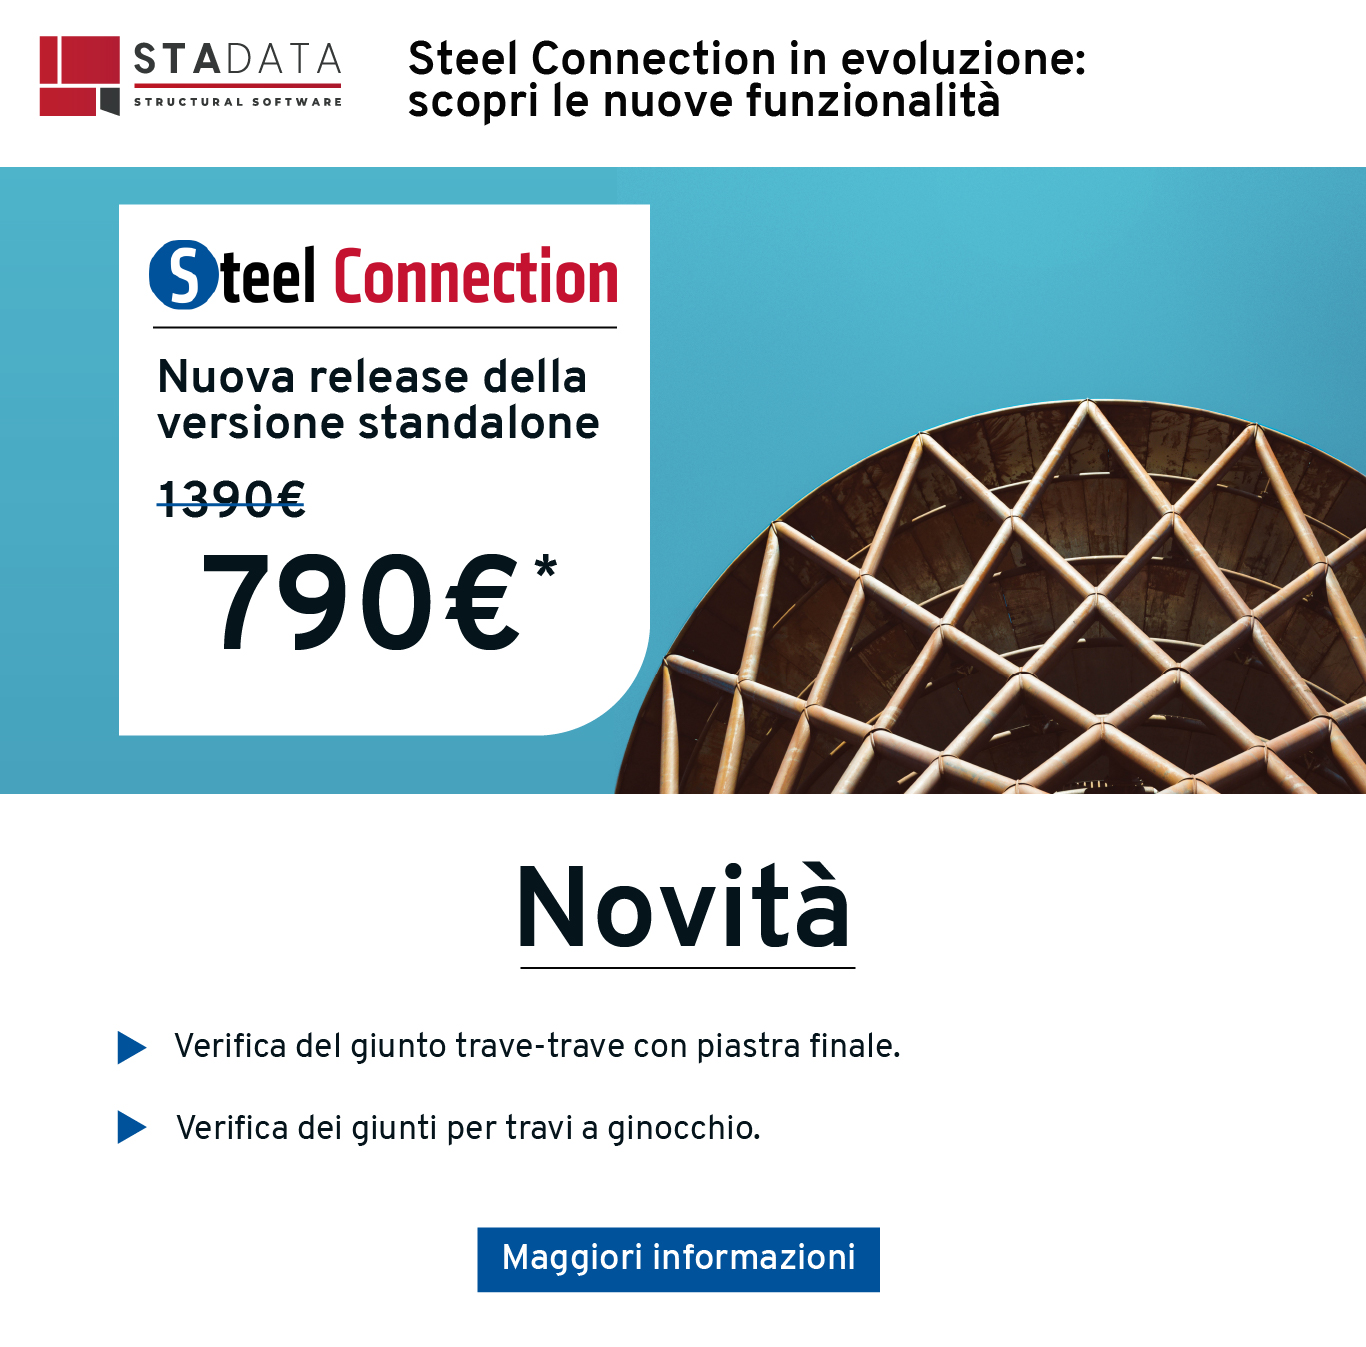 Steel Connection in evoluzione: scopri le nuove funzionalità